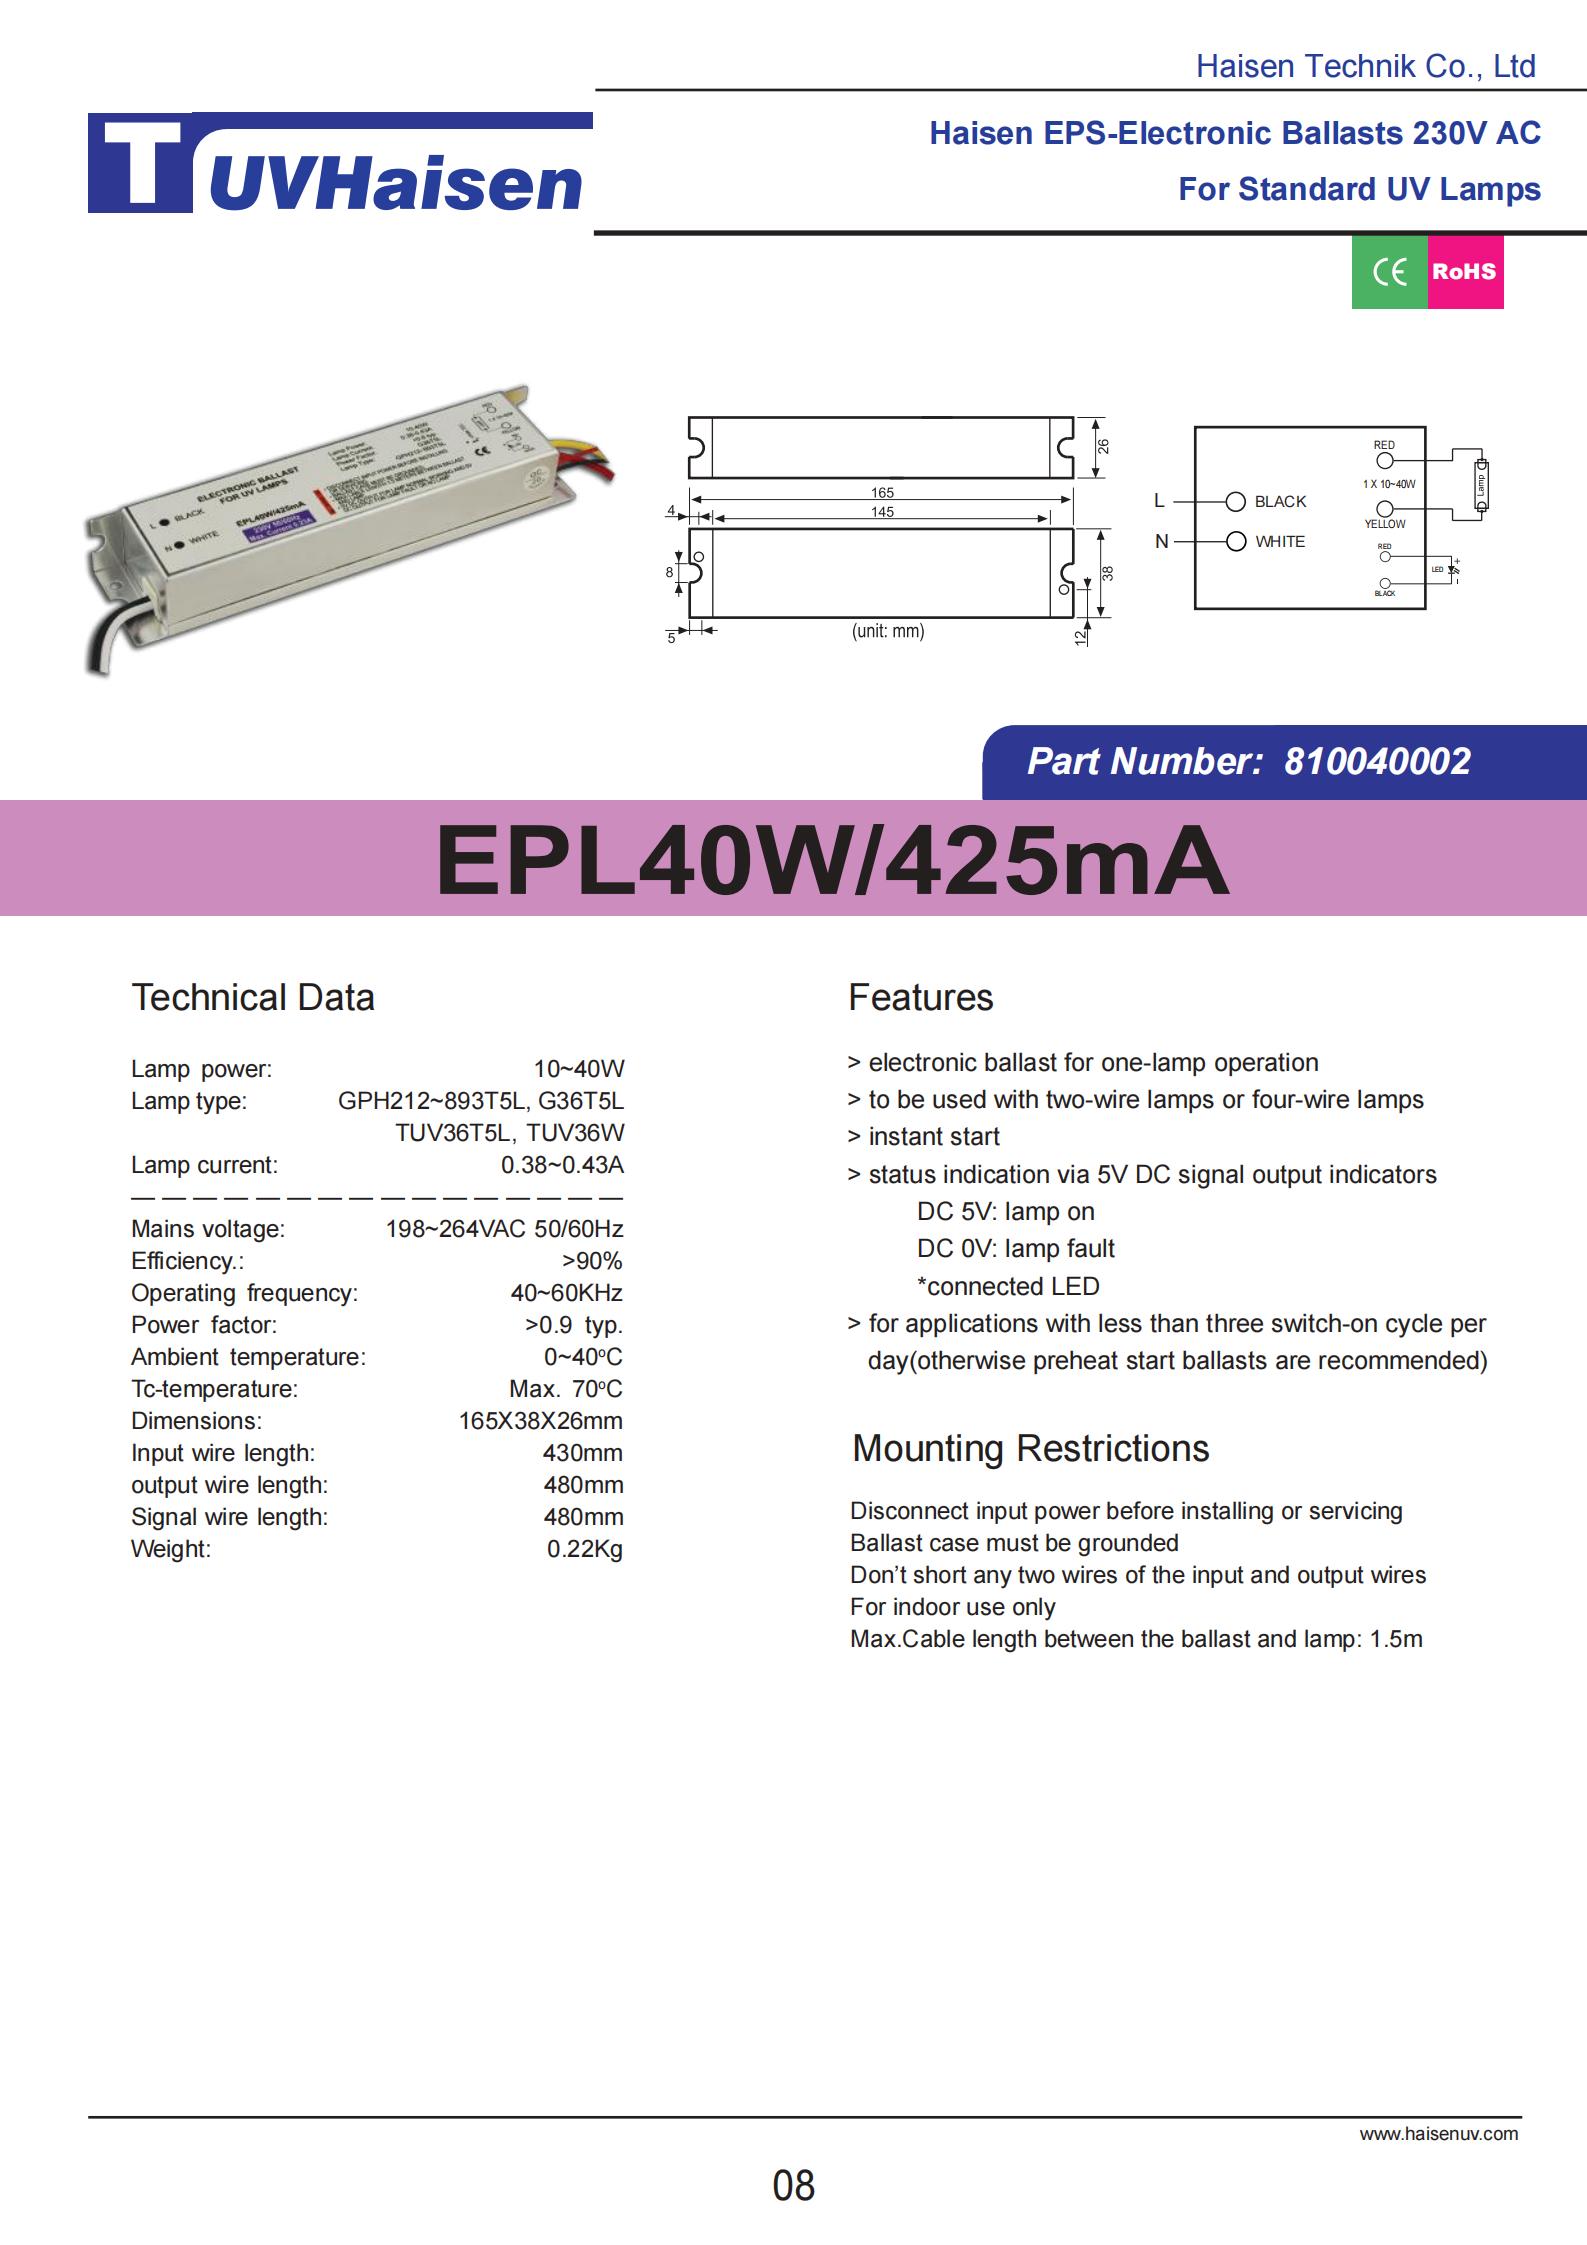  ultravoilet ballast EPL40W/425mA FOR UV LIGHTS